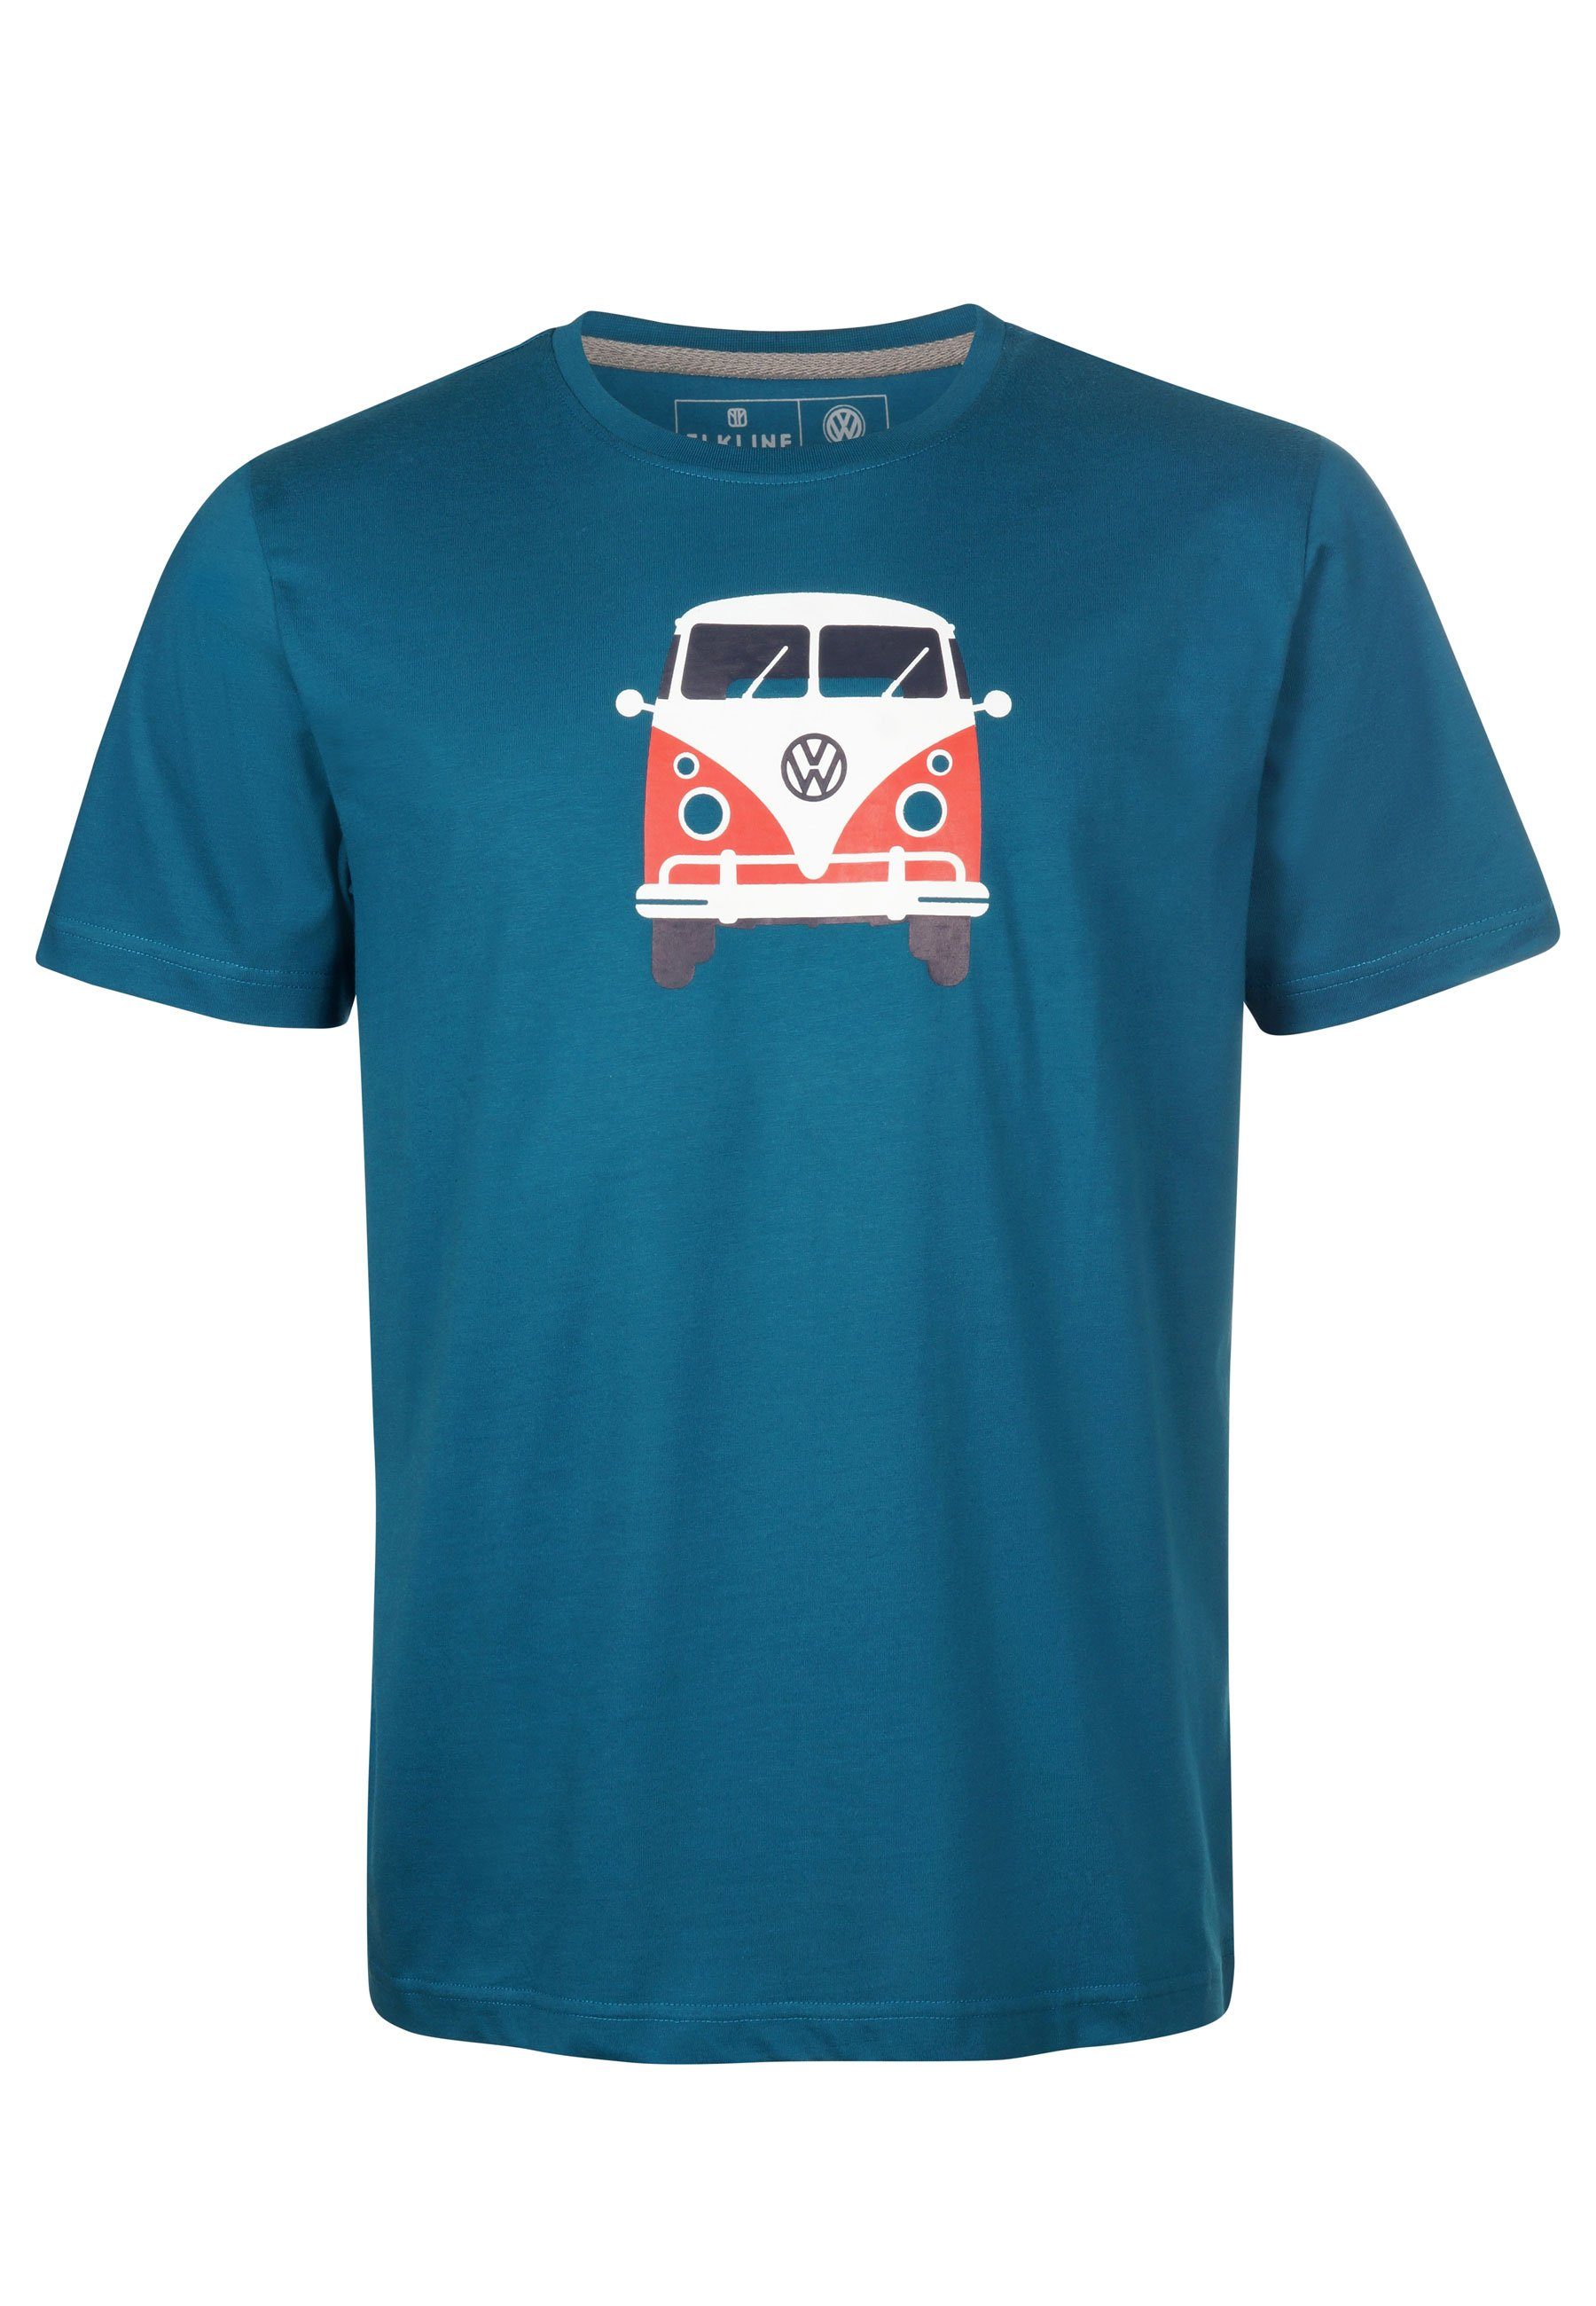 Bulli T-Shirt lizenzierter Brust coral Elkline Methusalem blue VW Rücken Print